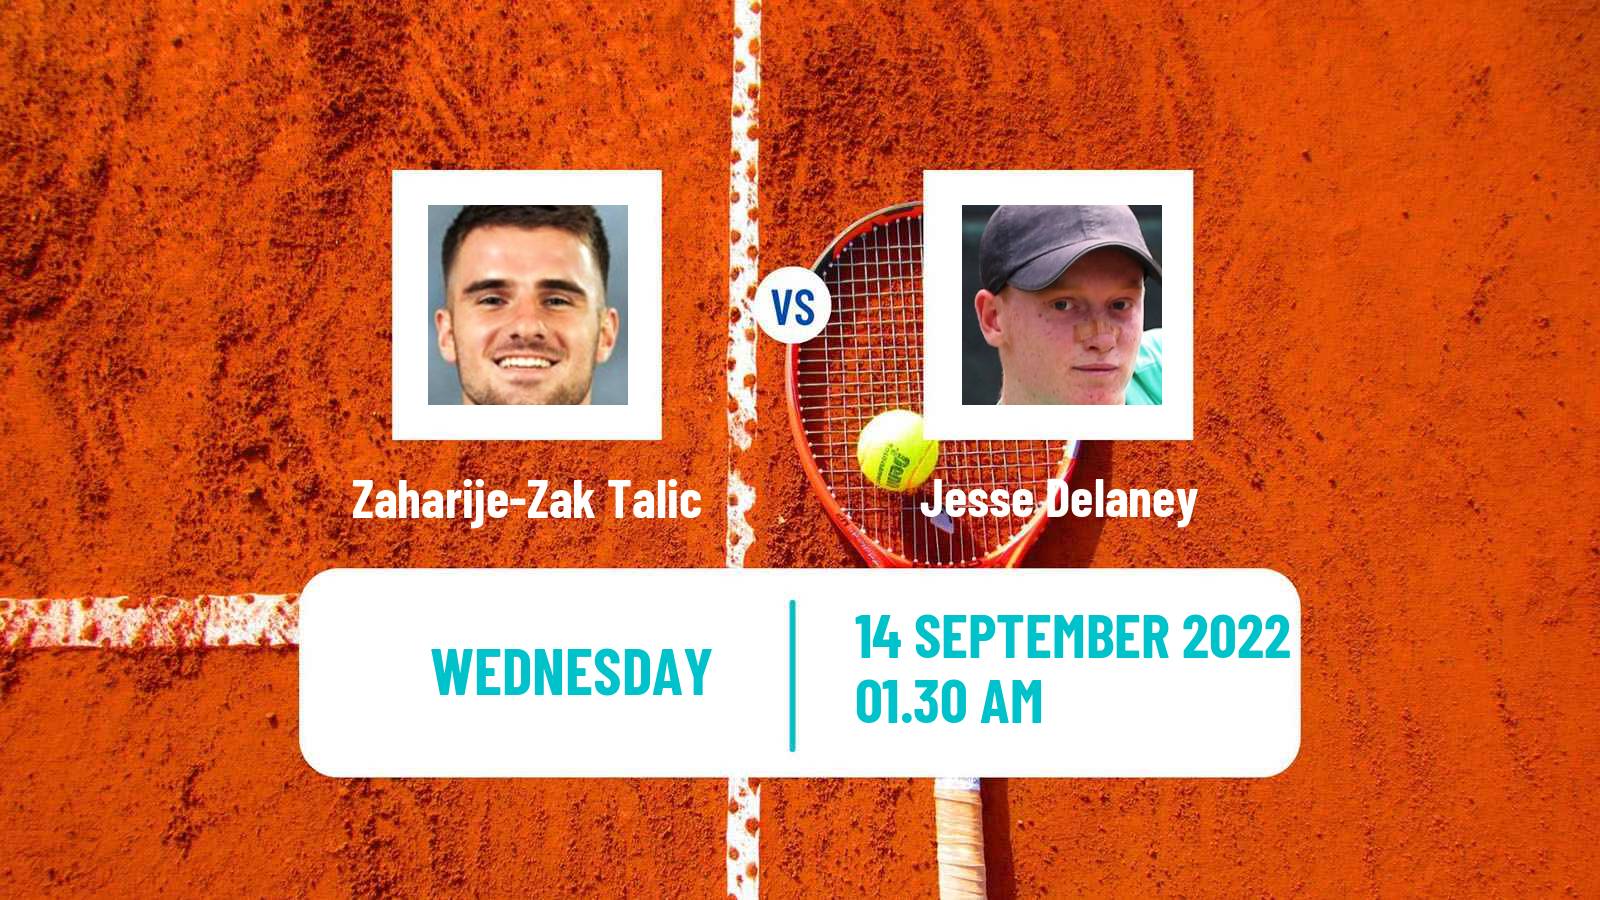 Tennis ITF Tournaments Zaharije-Zak Talic - Jesse Delaney